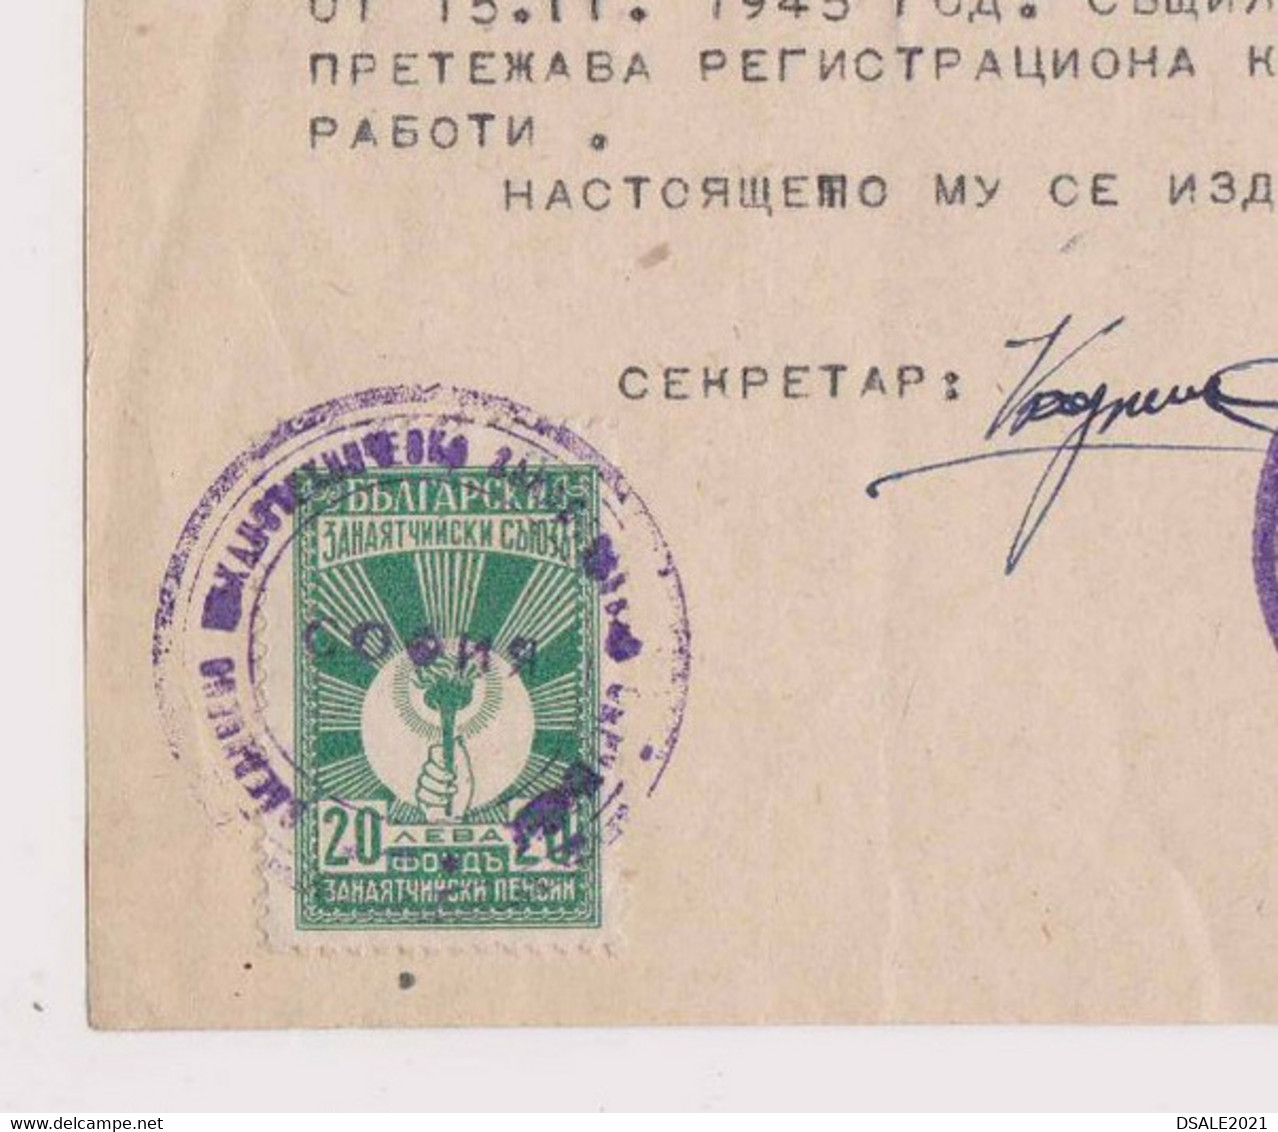 Bulgaria Bulgarie Bulgarije 1945 Certificate For Radio Maker Technician With Rare Fiscla Revenue Stamps Stamp (ds578) - Sellos De Servicio